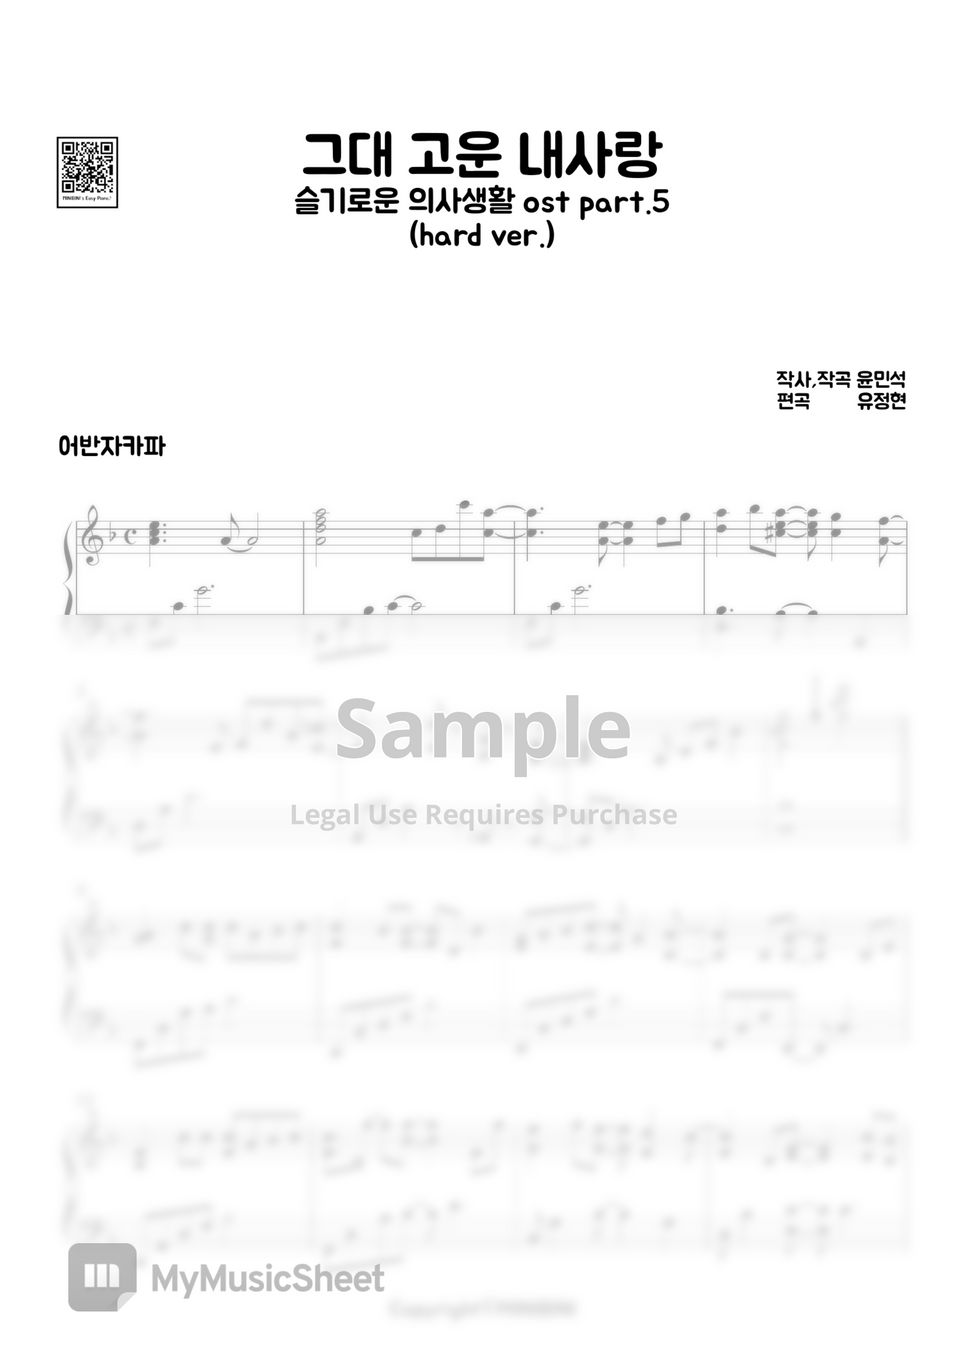 어반자카파 (URBAN ZAKAPA) - 그대 고운 내사랑 (Beautiful My Love) [슬기로운 의사생활, Hospital Playlist OST Pt.5] (Hard Version) by MINIBINI